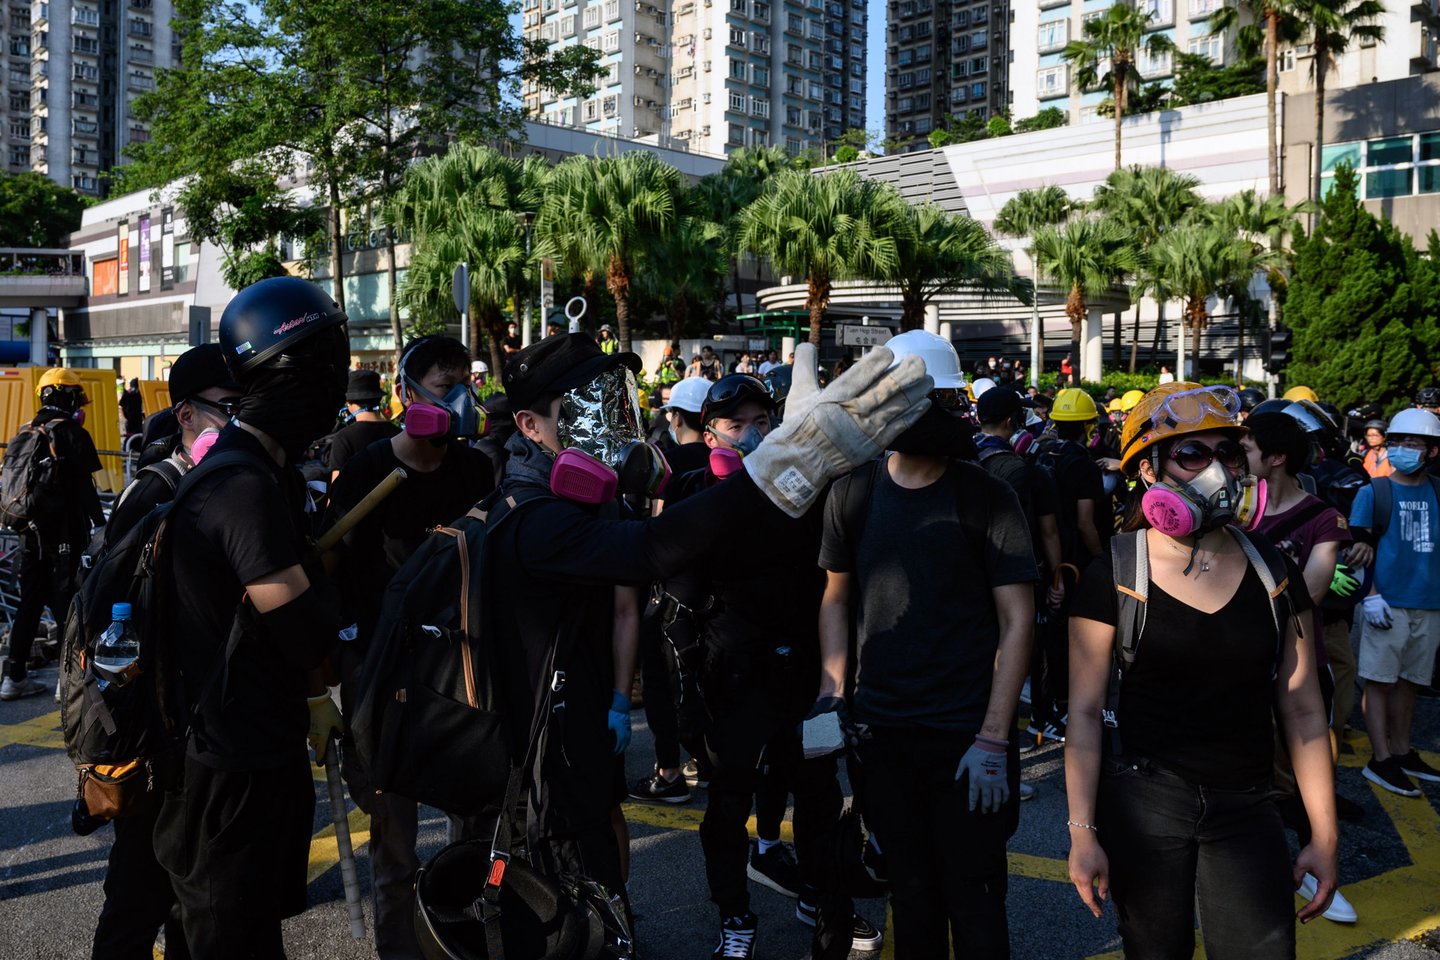  JAV prezidento Donaldo Trumpo pasirašyti įstatymai, kuriai išreikiama parama Honkongo protestuotojams, pastaruosius labai nudžiugino. Tuo tarpu Kinijos aukščiausieji vadovai šį veiksmą laiko itin arogantišku.<br>AFP/Scanpix nuotr.